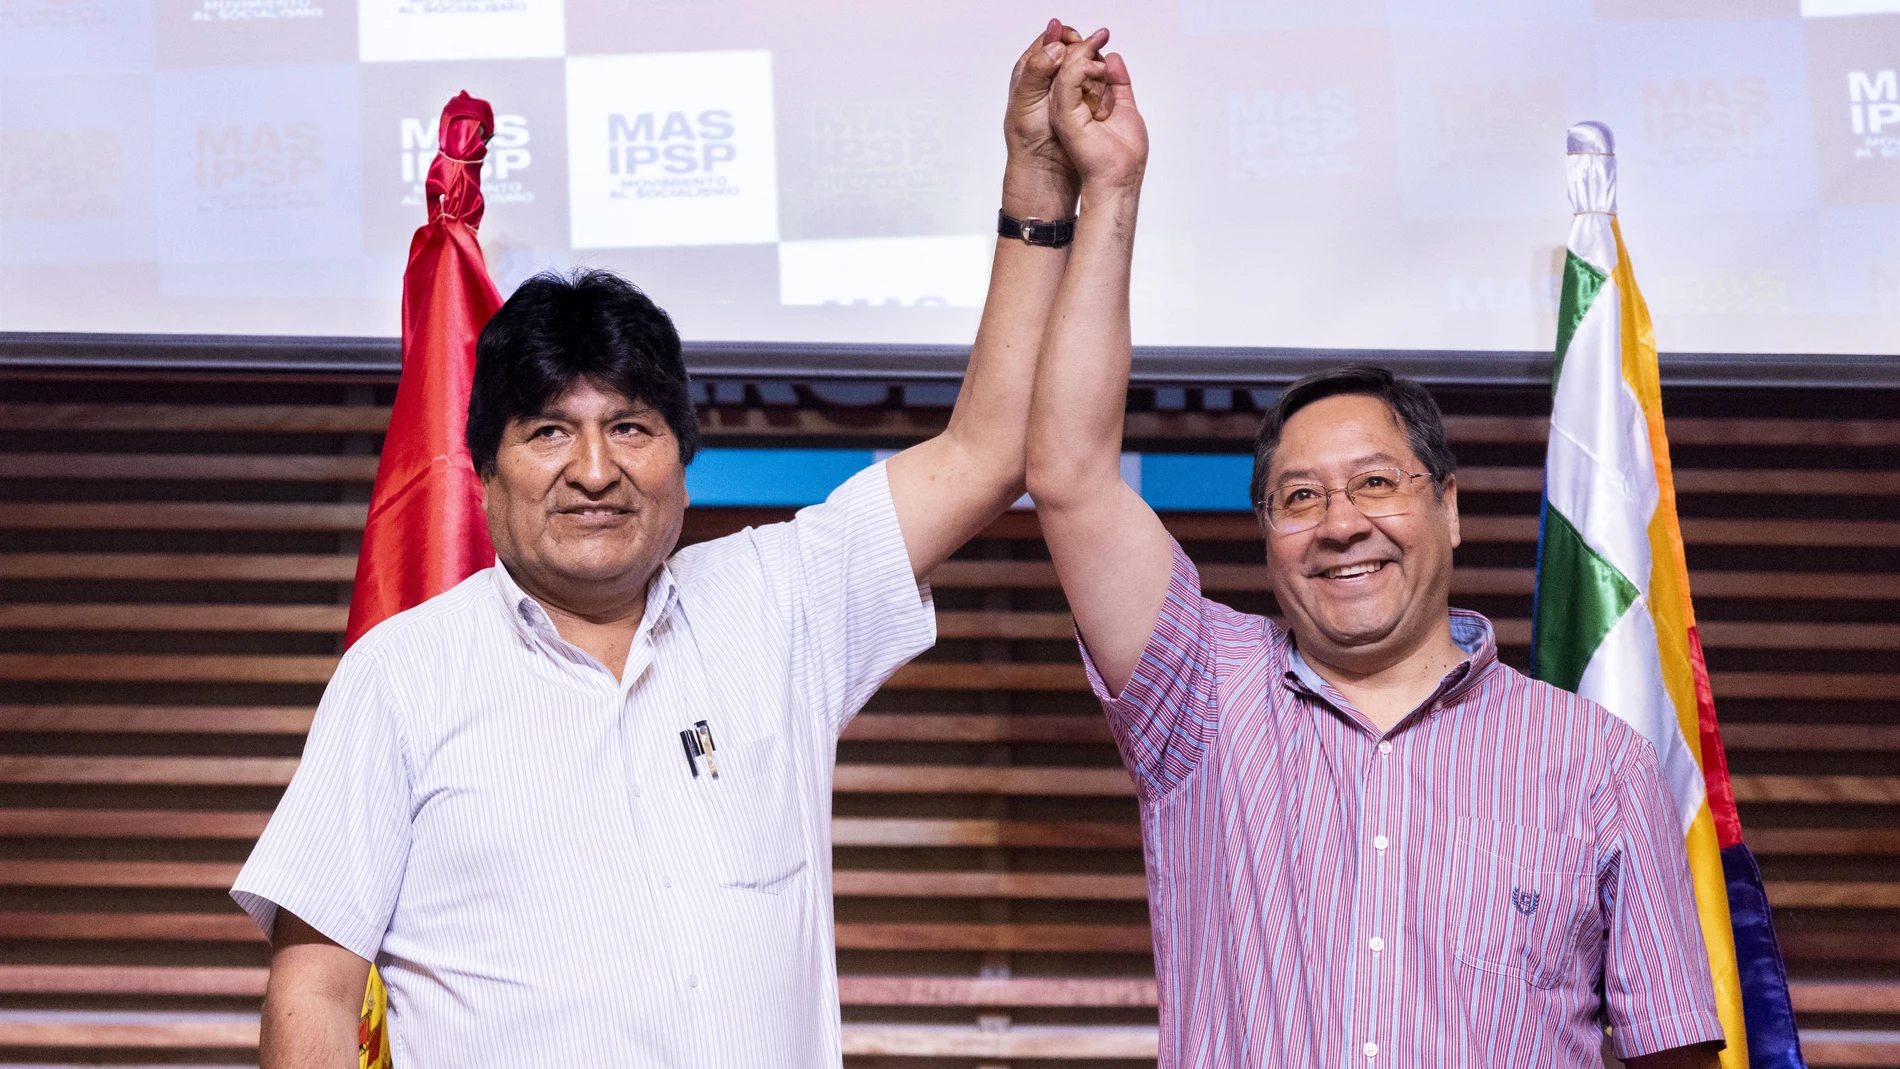 El expresidente de Bolivia Evo Morales y el candidato del MAS Luis Arce (Foto de ARCHIVO)27/01/2020